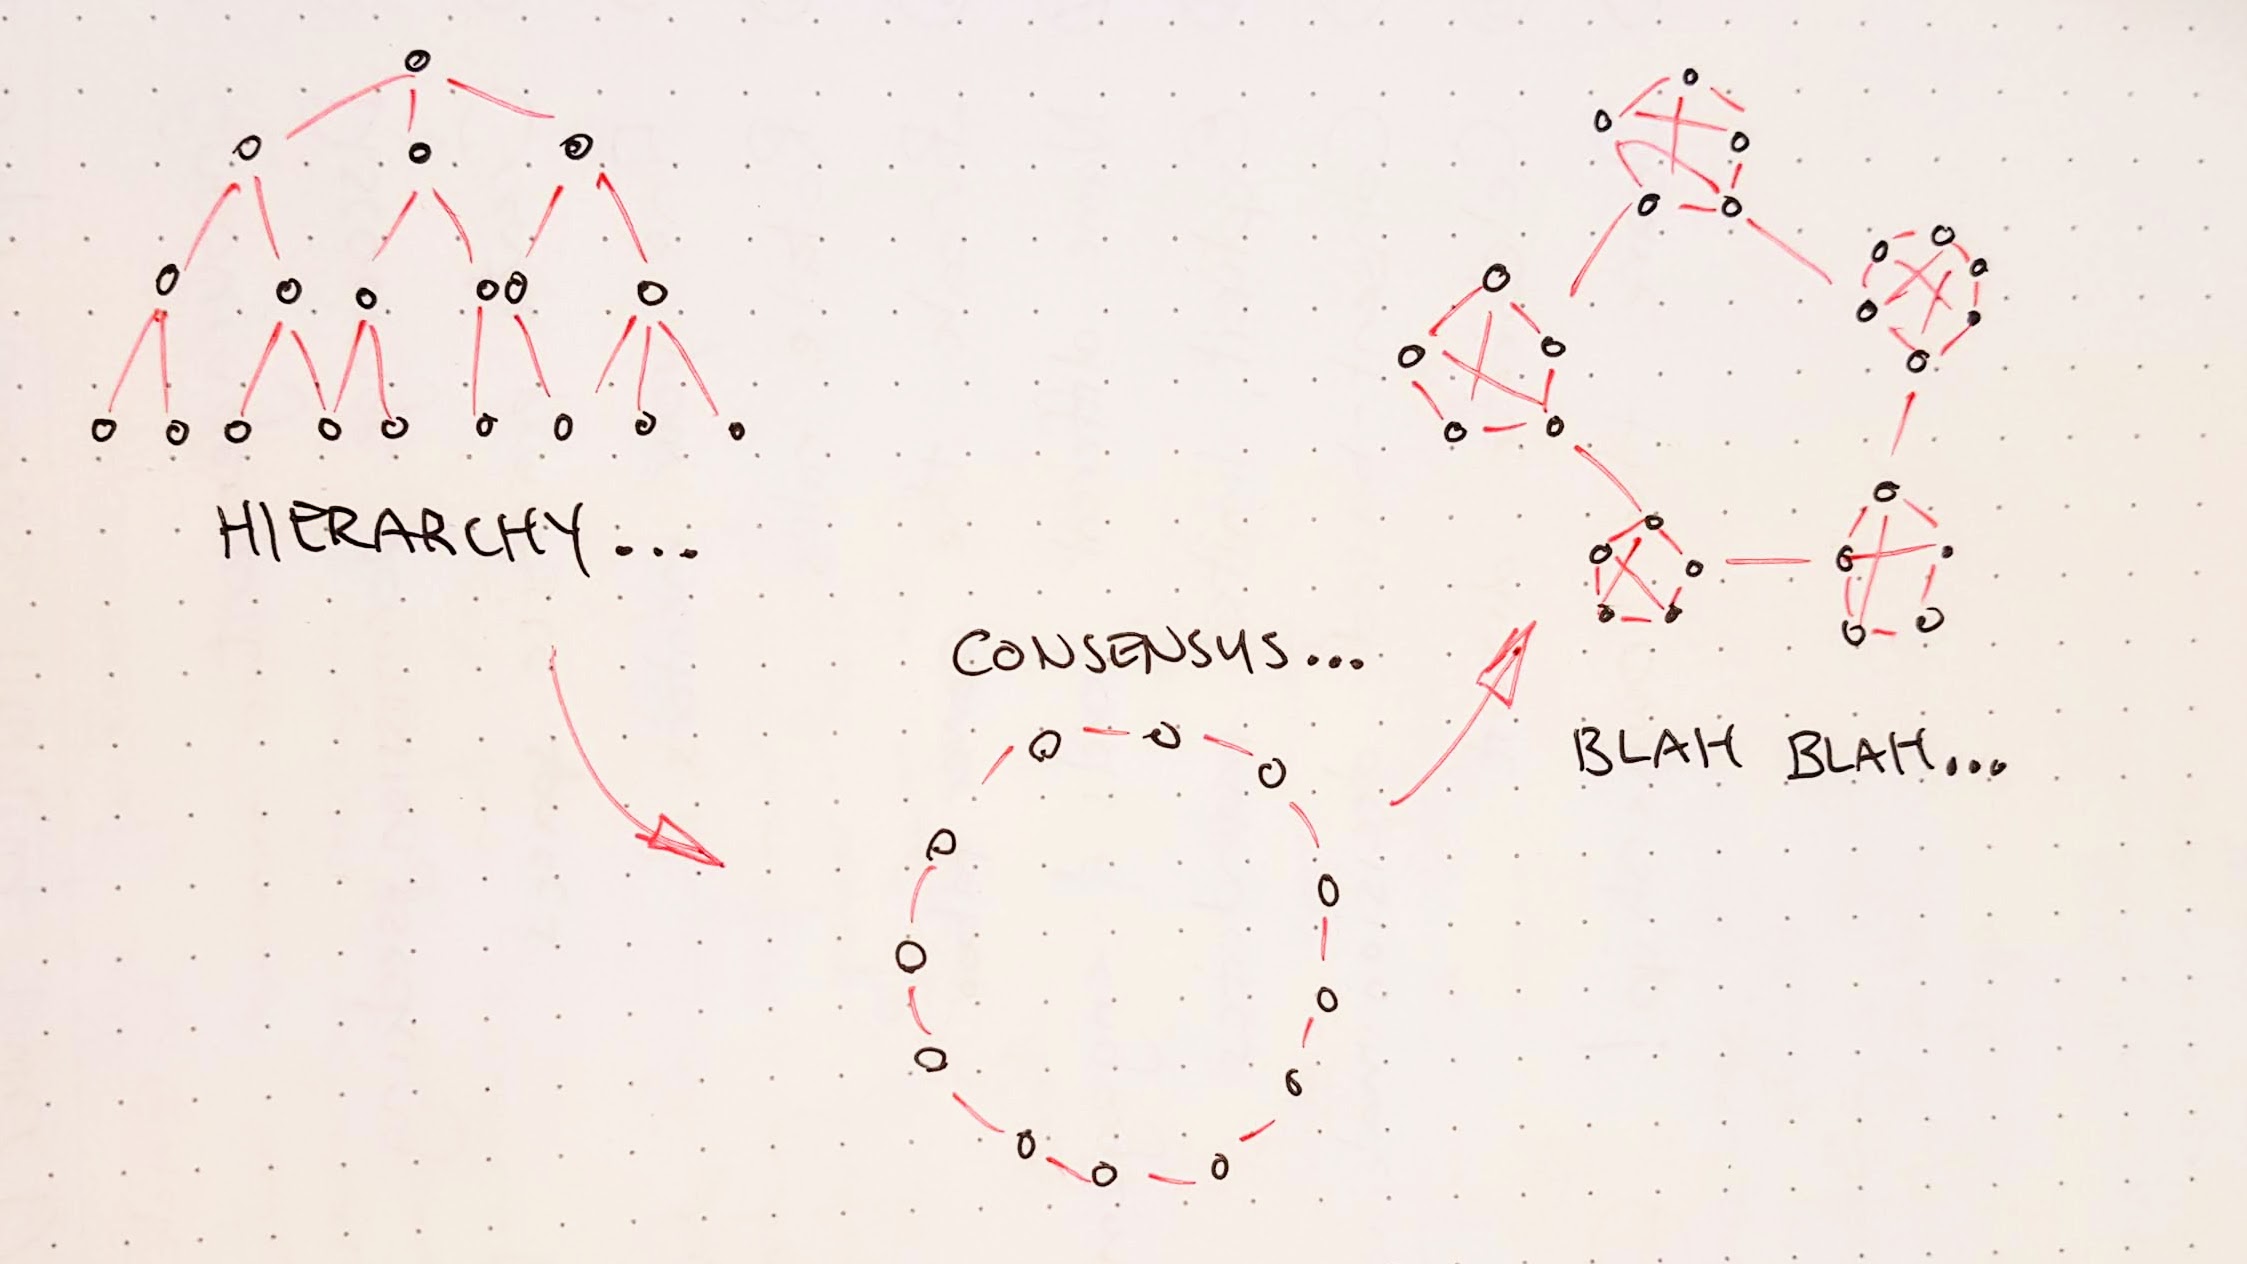 drawing of 3 org charts: hierarchy, consensus, blah blah...